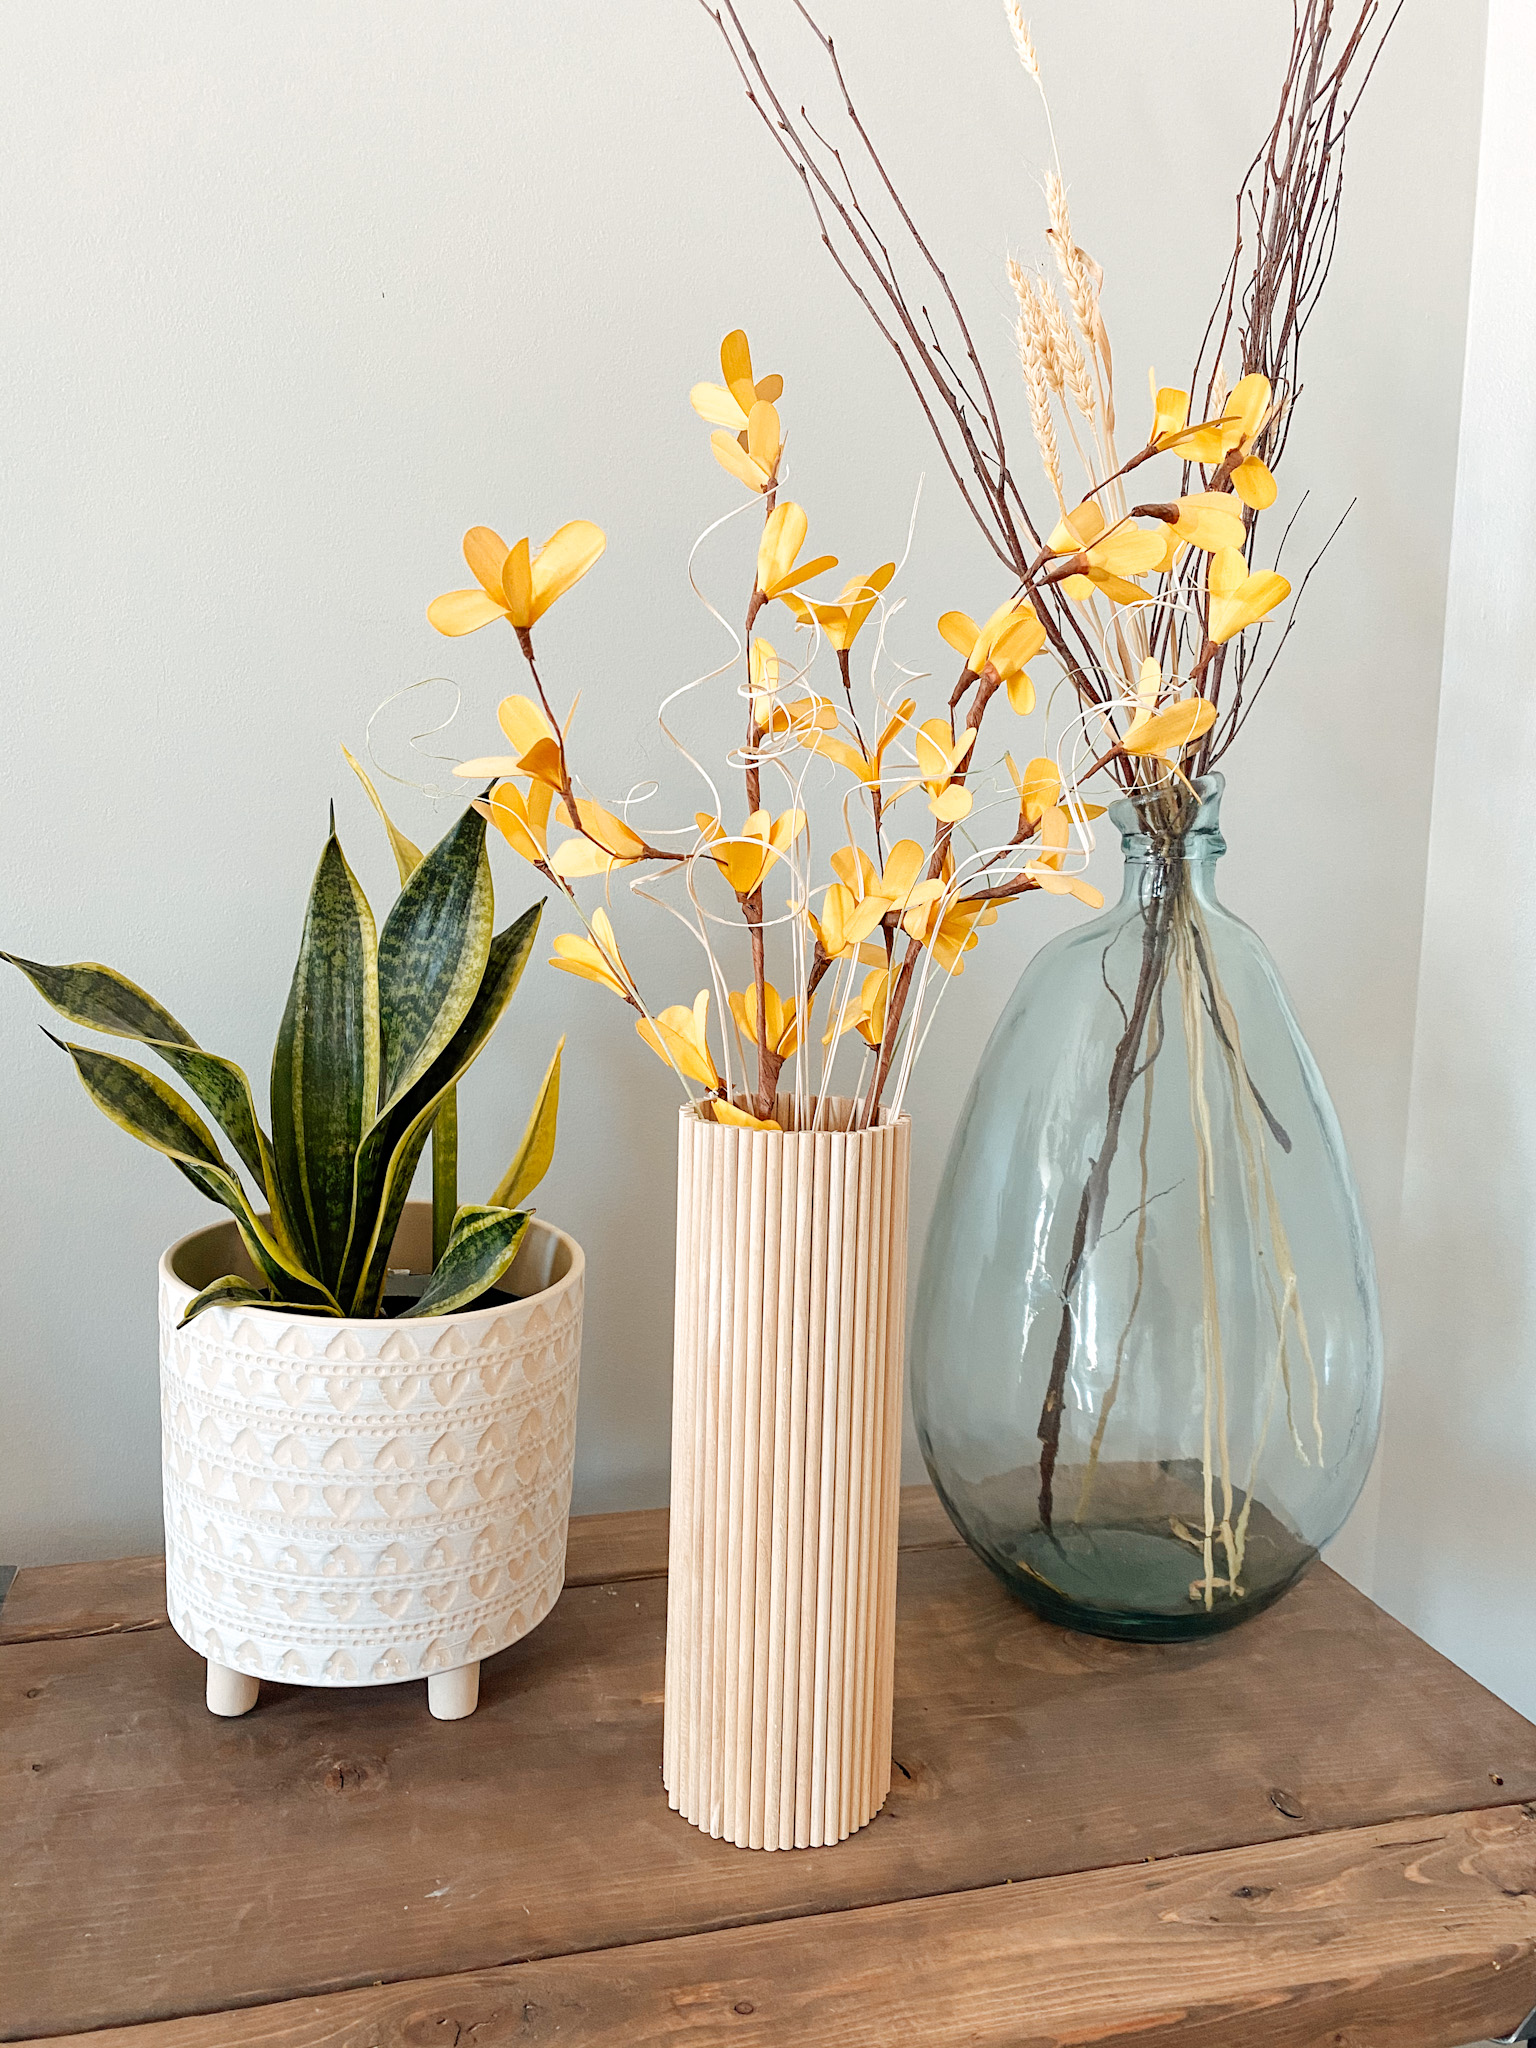 natural wood vase